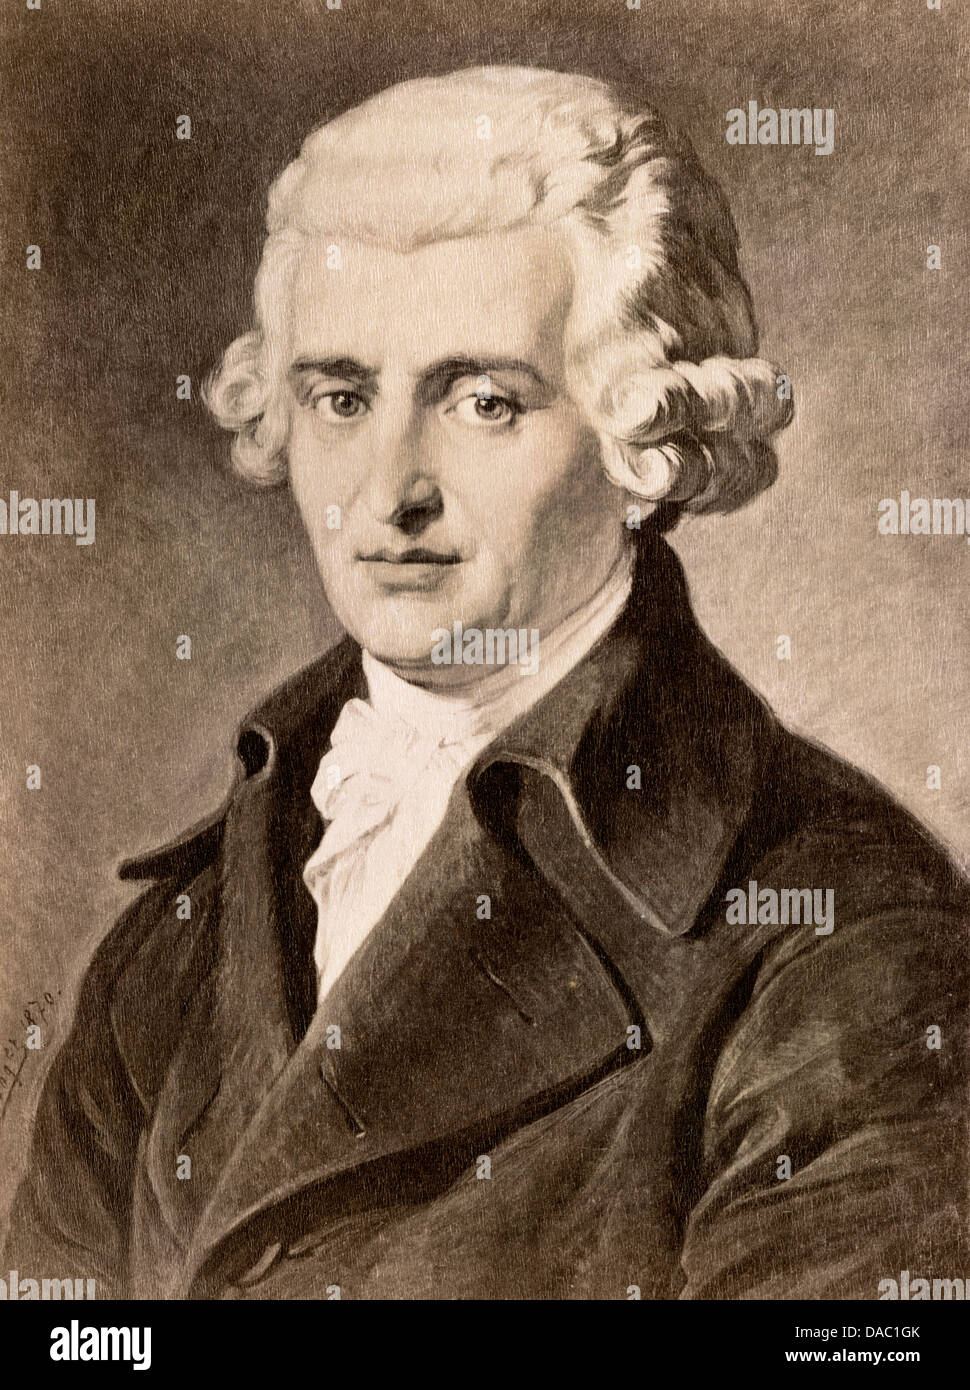 Ritratto del compositore Franz Joseph Haydn. Fotografia di un dipinto Foto Stock